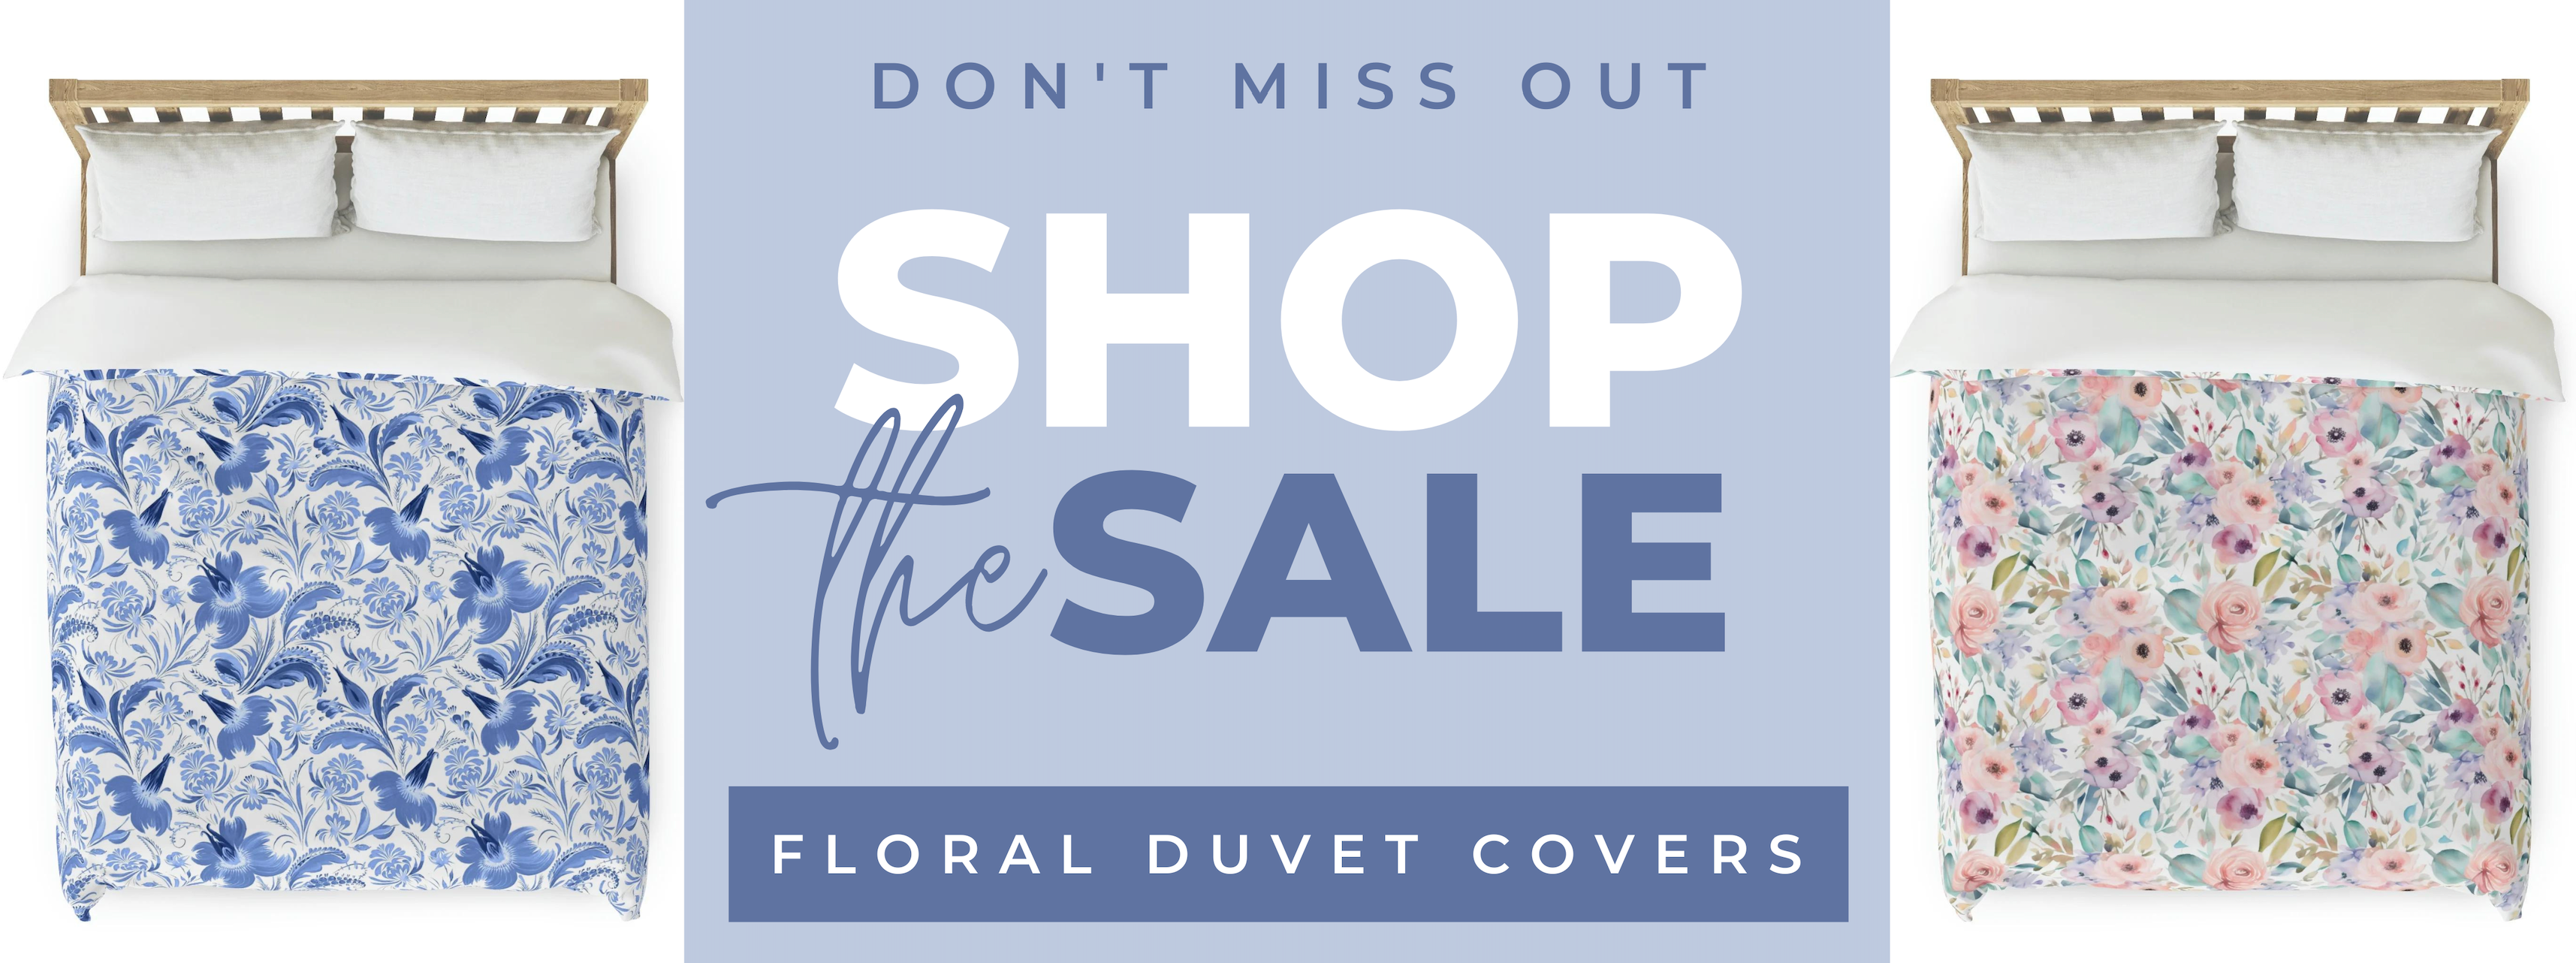 duvet cover sale banner don't miss out shop the sale